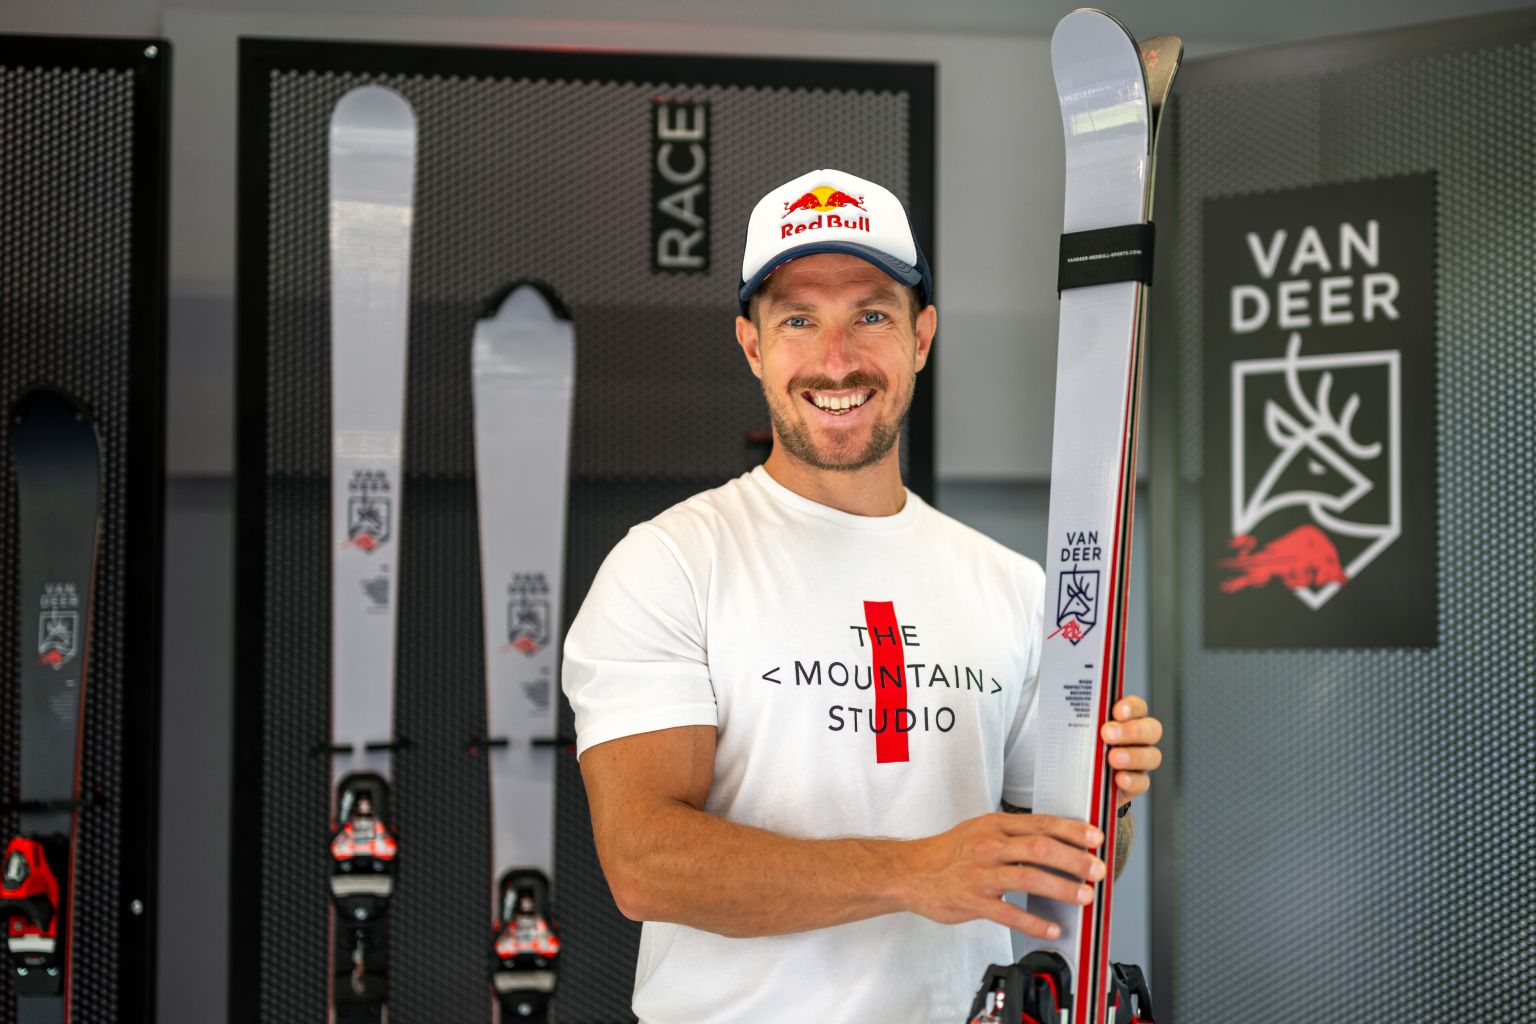 Pet godina nakon penzionisanja, legendarni Marcel Hirscher se vraća ski takmičenjima